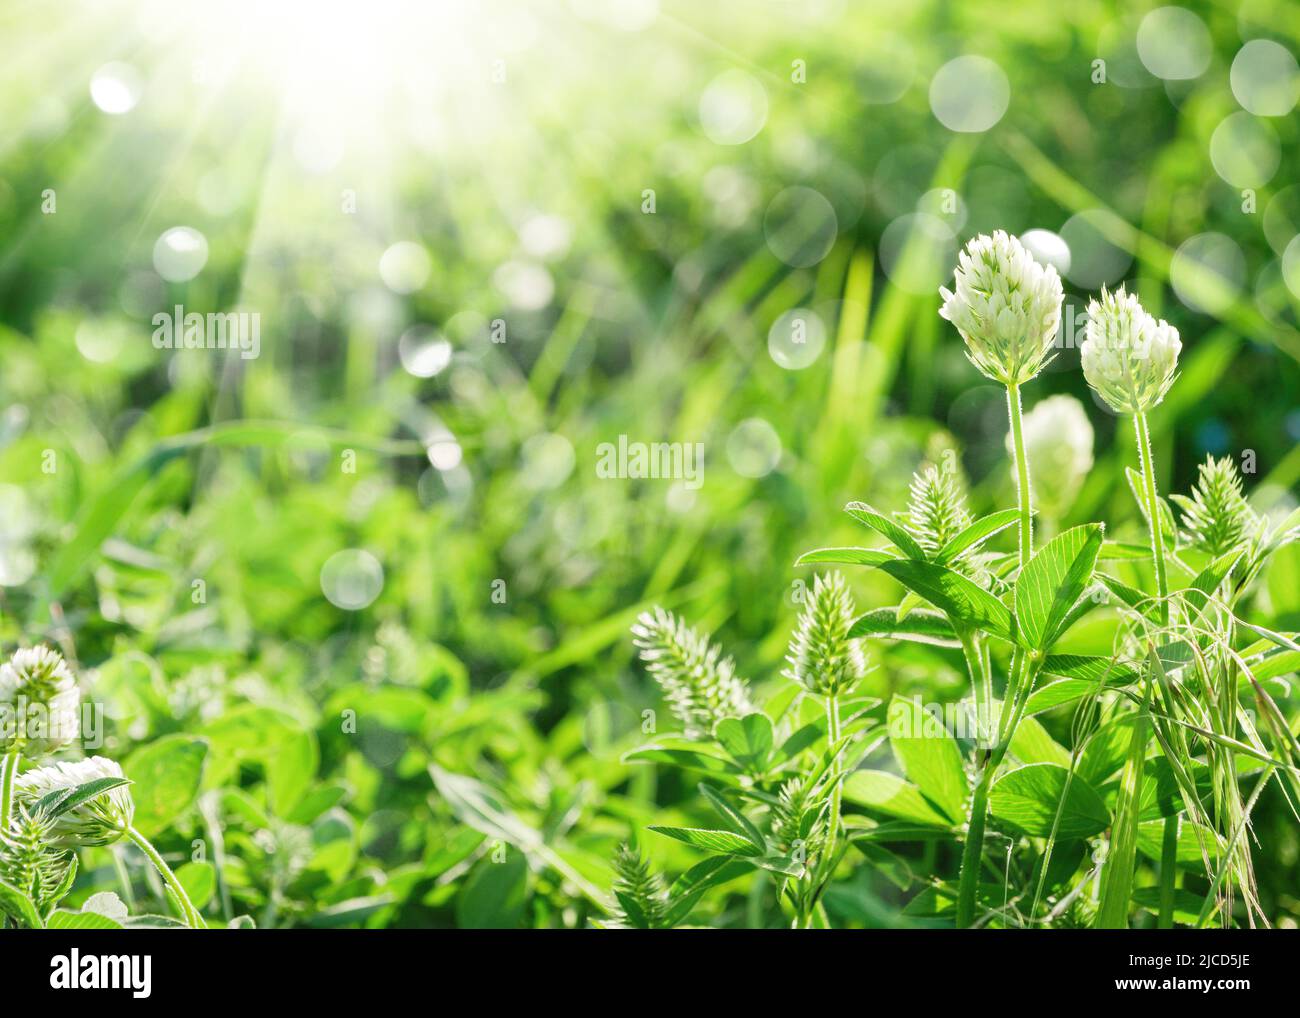 Primavera o verano de fondo natural con hierba verde, flores silvestres y bokeh Foto de stock